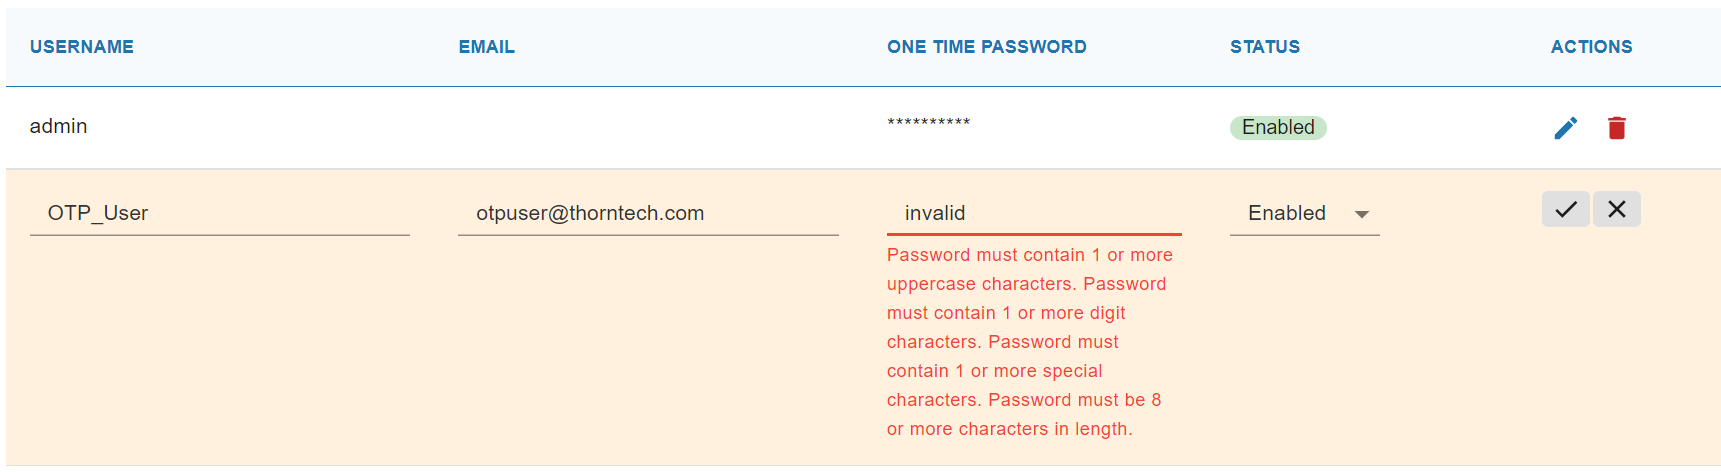 Invalid password